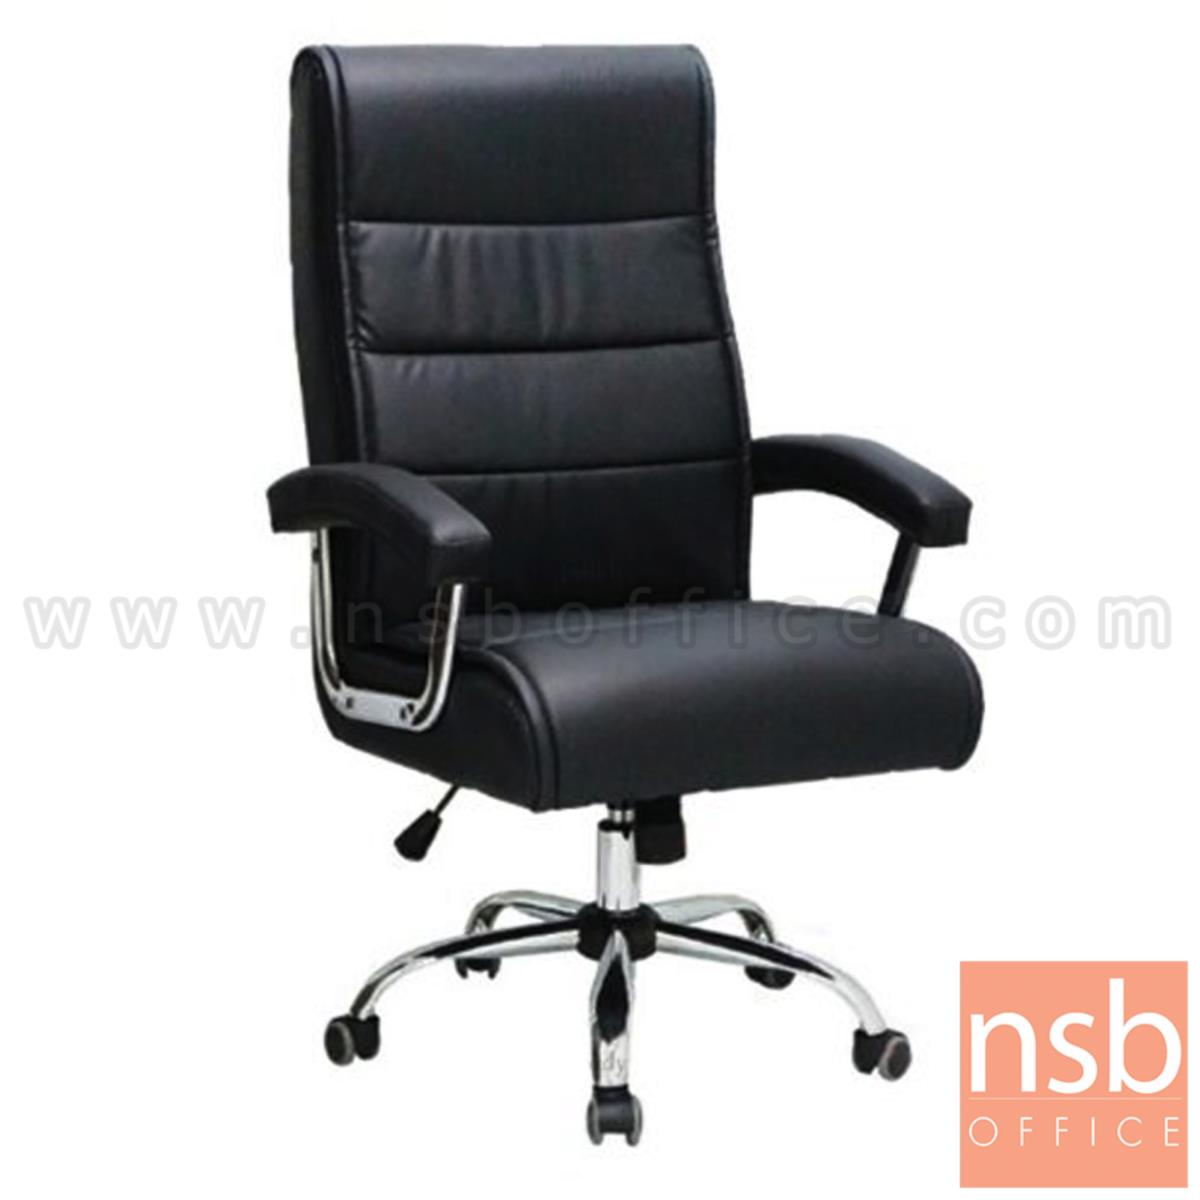 B01A517:เก้าอี้ผู้บริหาร รุ่น Nicholas (นิโคลัส) ขาเหล็กชุบโครเมี่ยม 